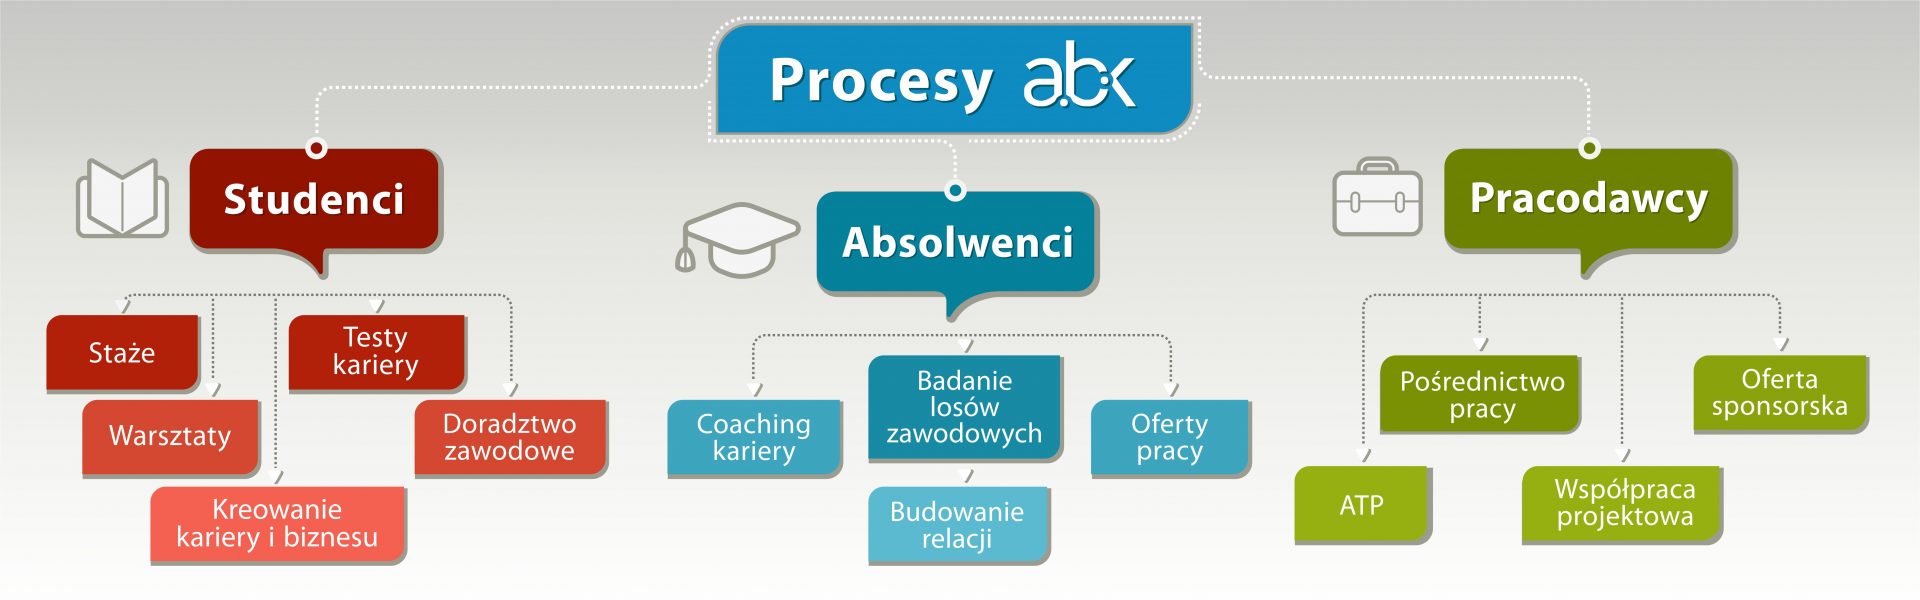 Procesy ABK